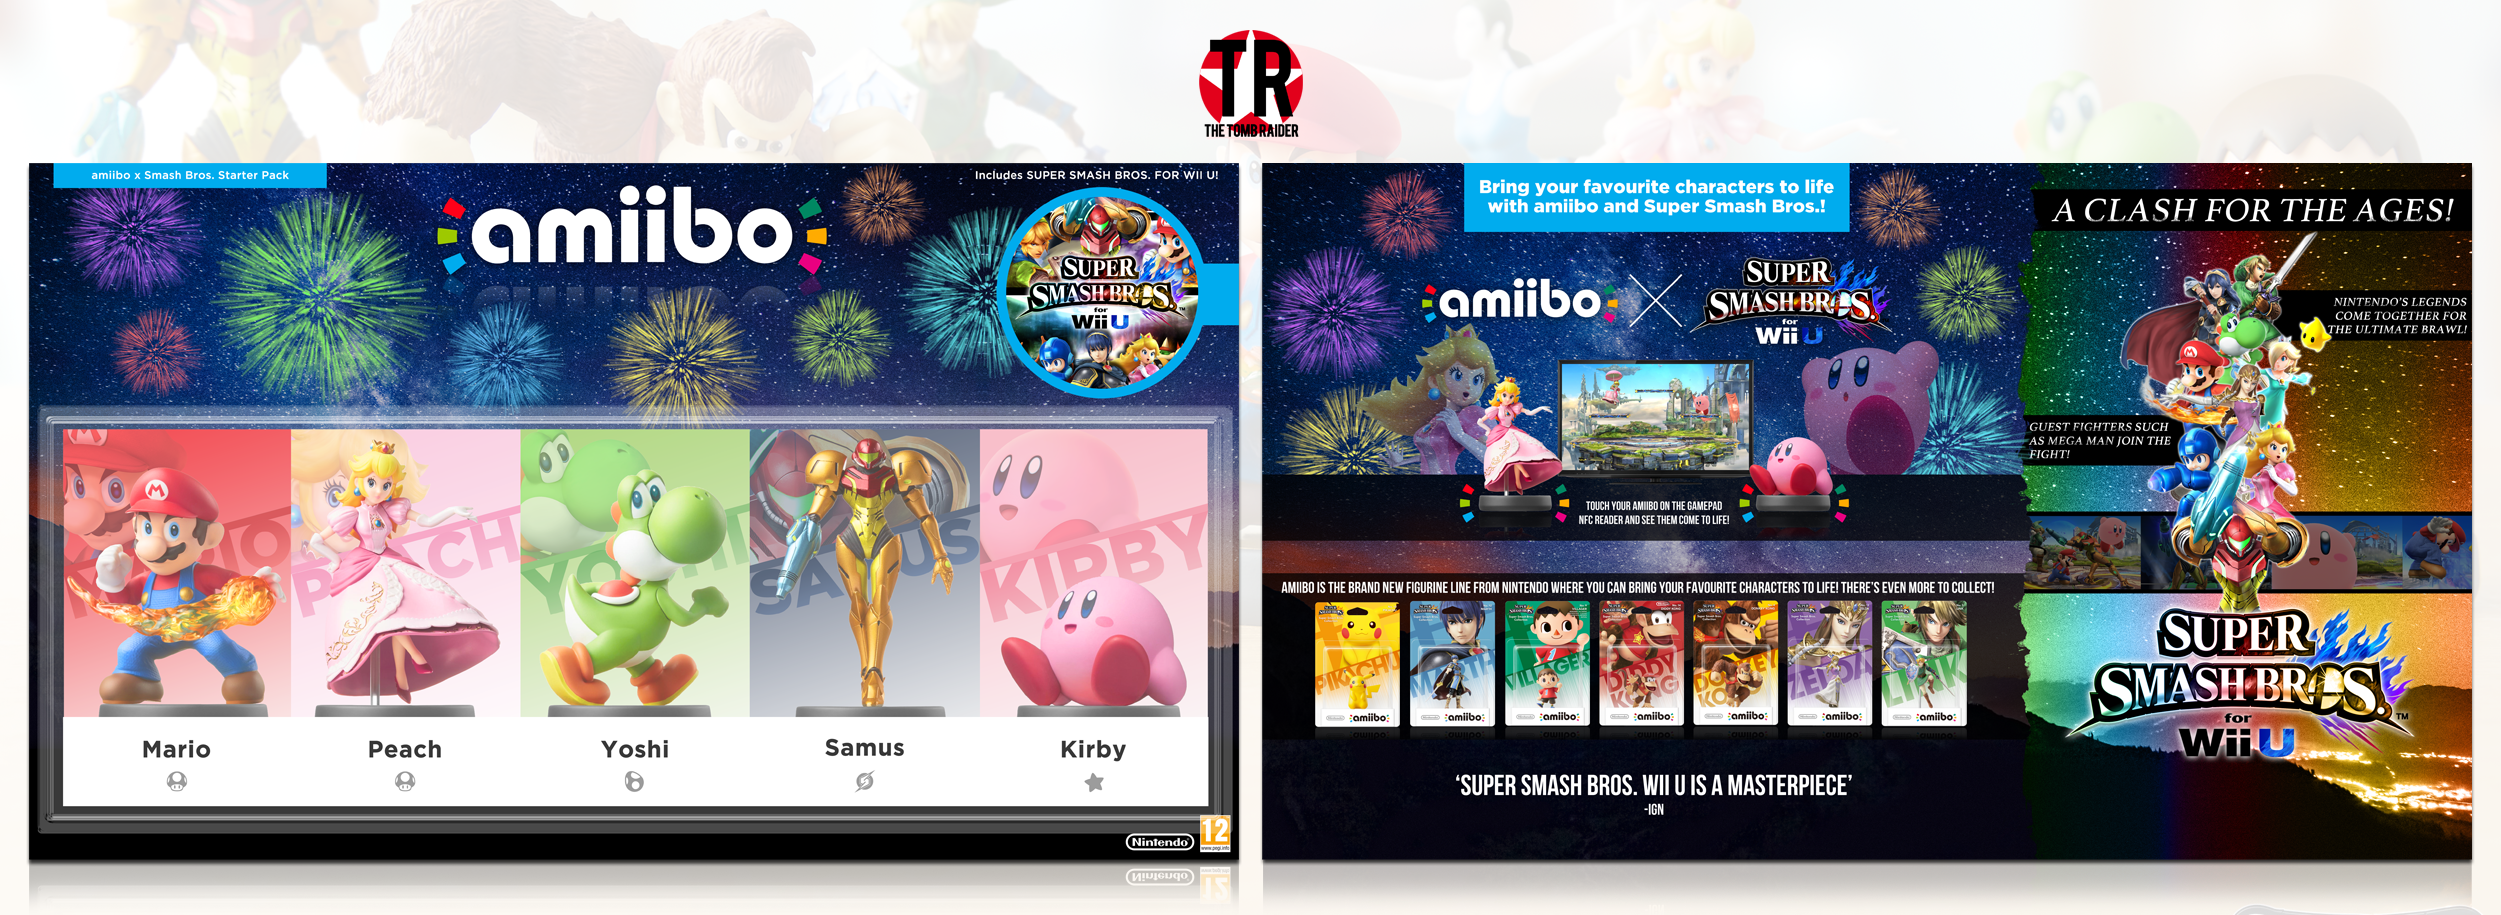 amiibo x Super Smash Bros. for Wii U box cover